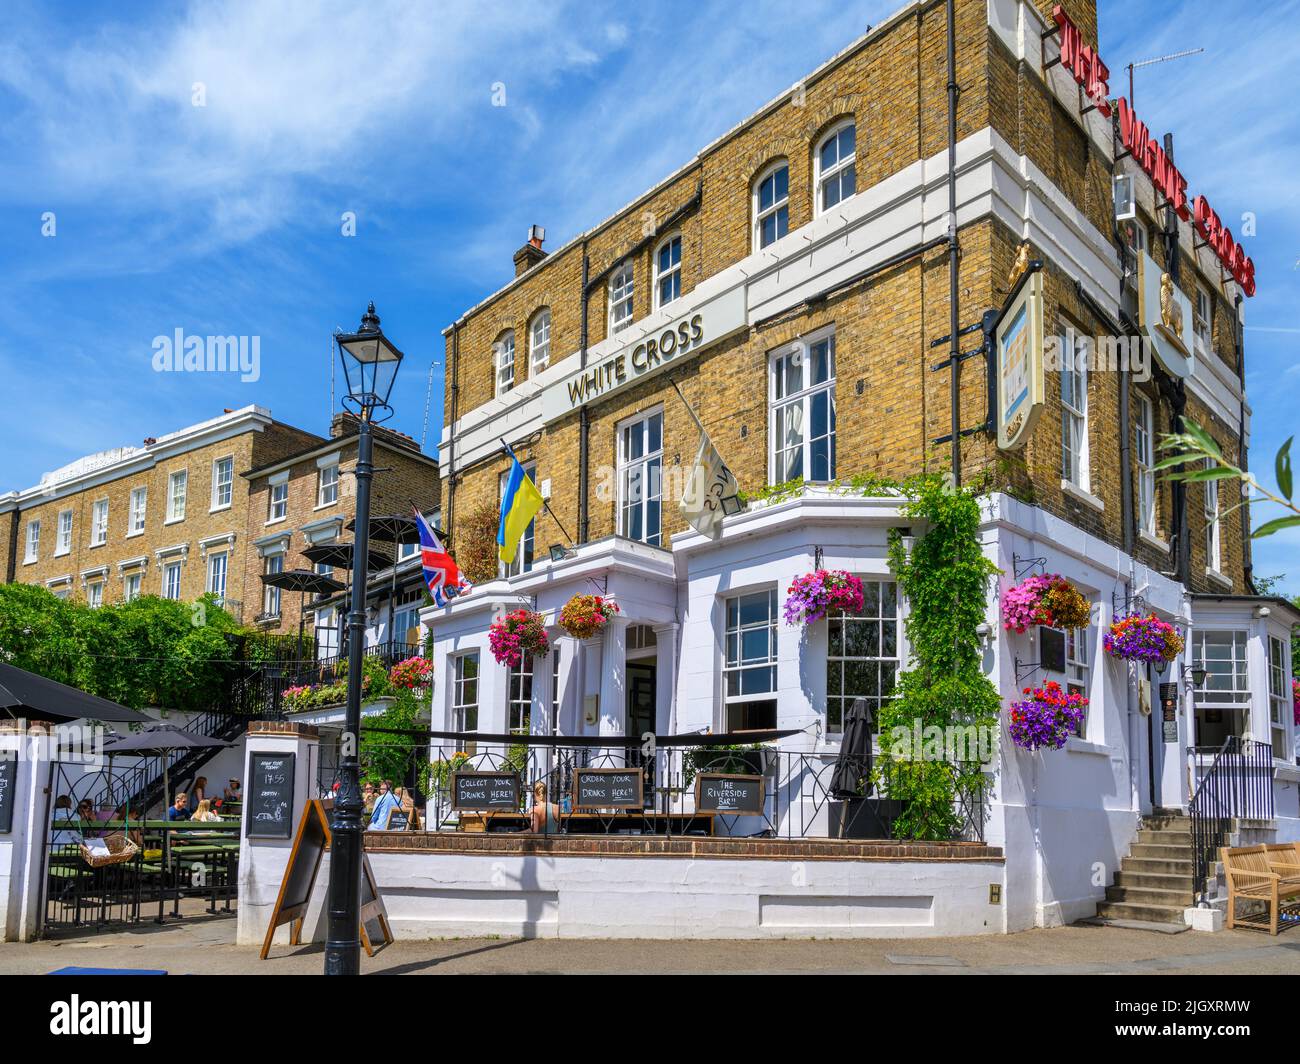 Le pub White Cross sur le bord de la rivière à Richmond upon Thames, Londres, Angleterre, Royaume-Uni Banque D'Images